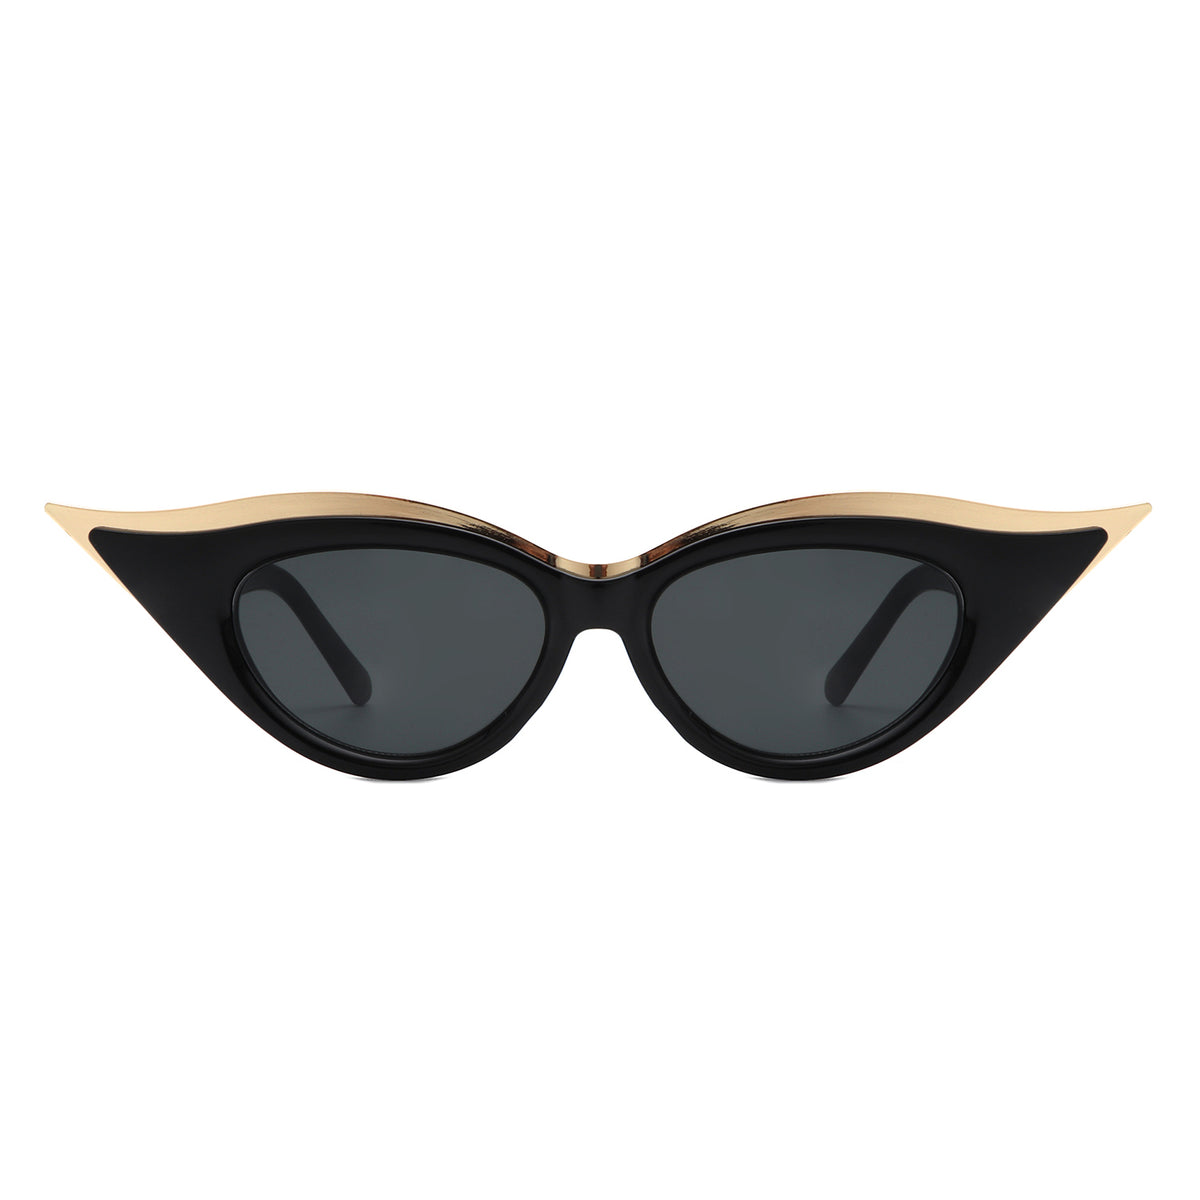 HS1237 - Women Round Fashion Extreme Cat Eye Wholesale Sunglasses